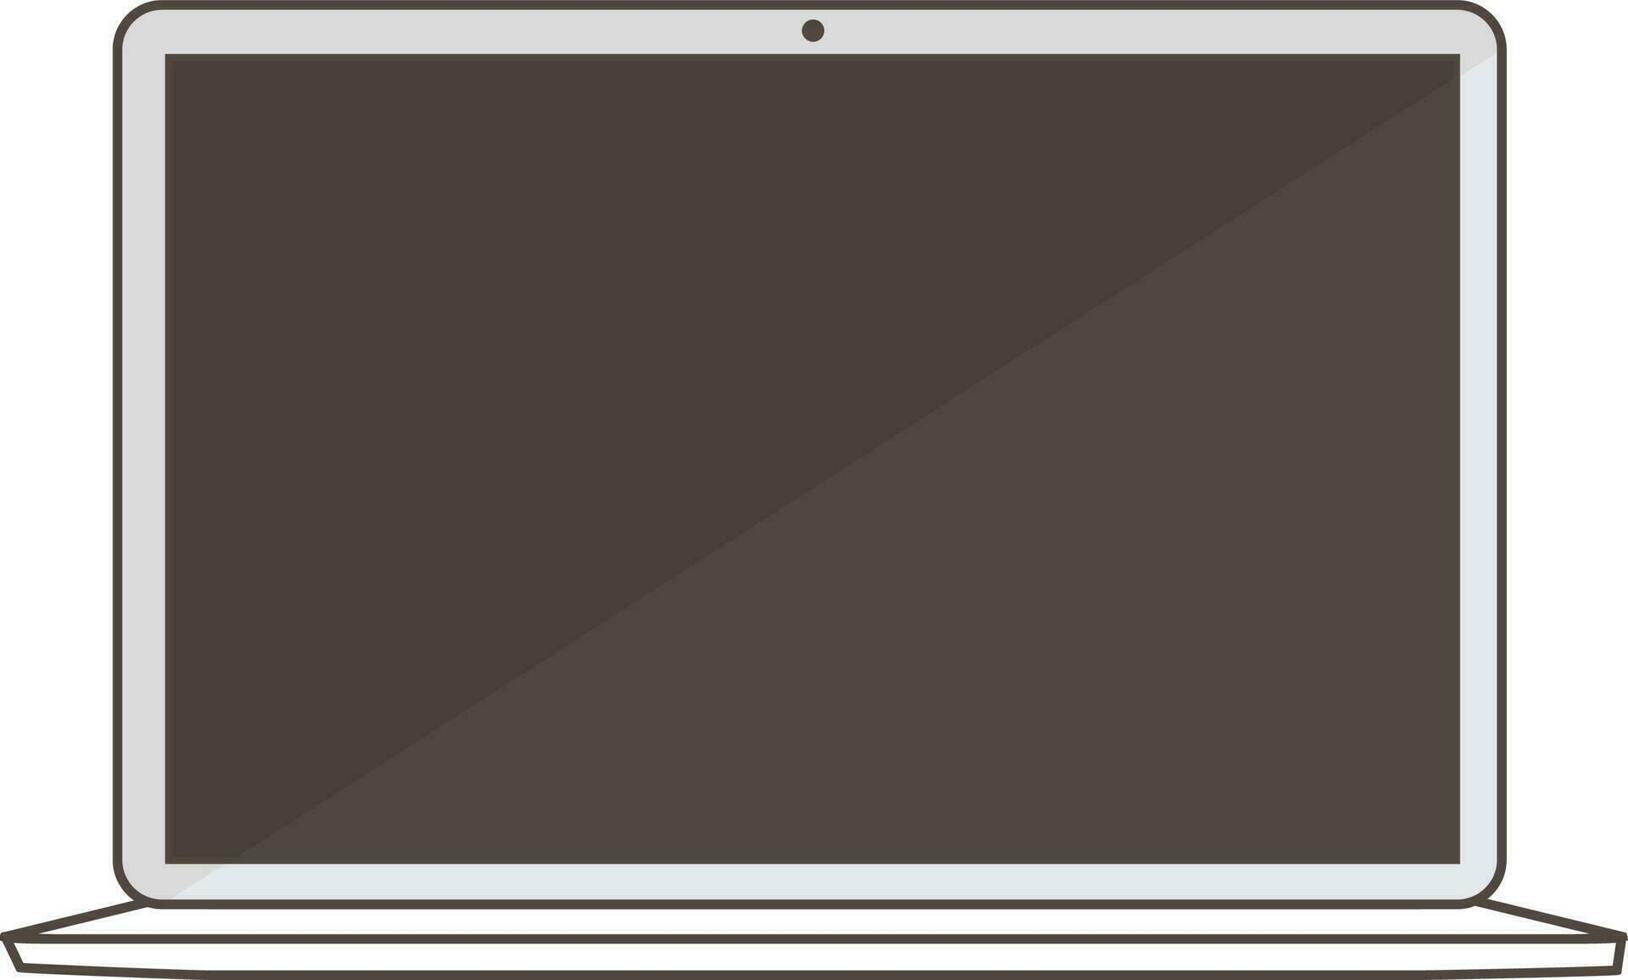 plano estilo tela do uma computador portátil. vetor